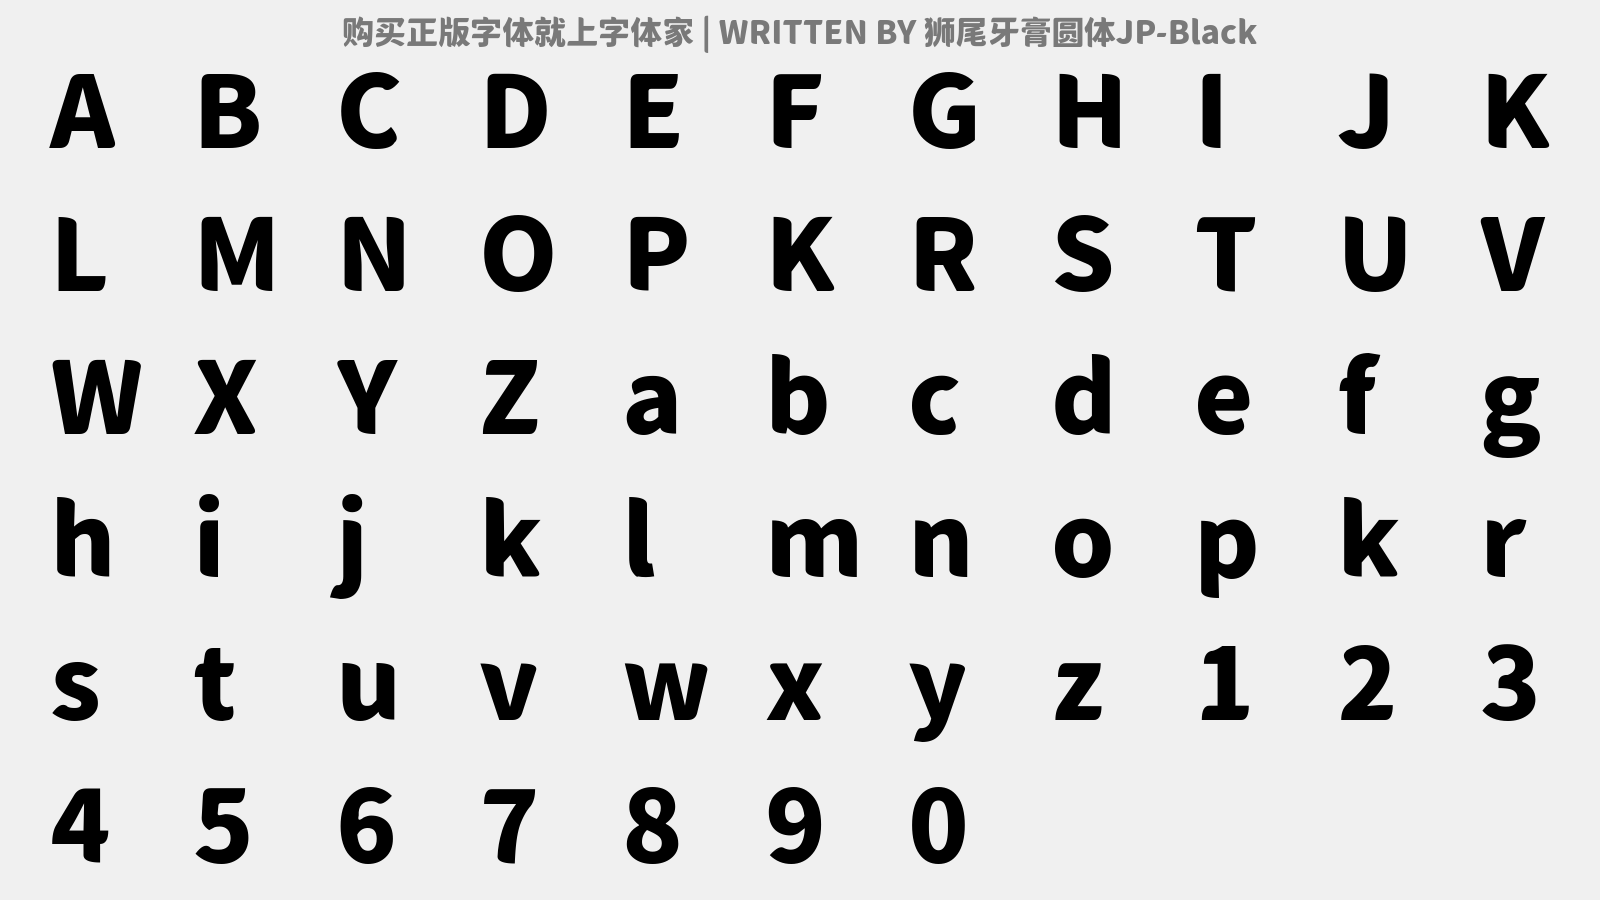 狮尾牙膏圆体JP-Black - 大写字母/小写字母/数字